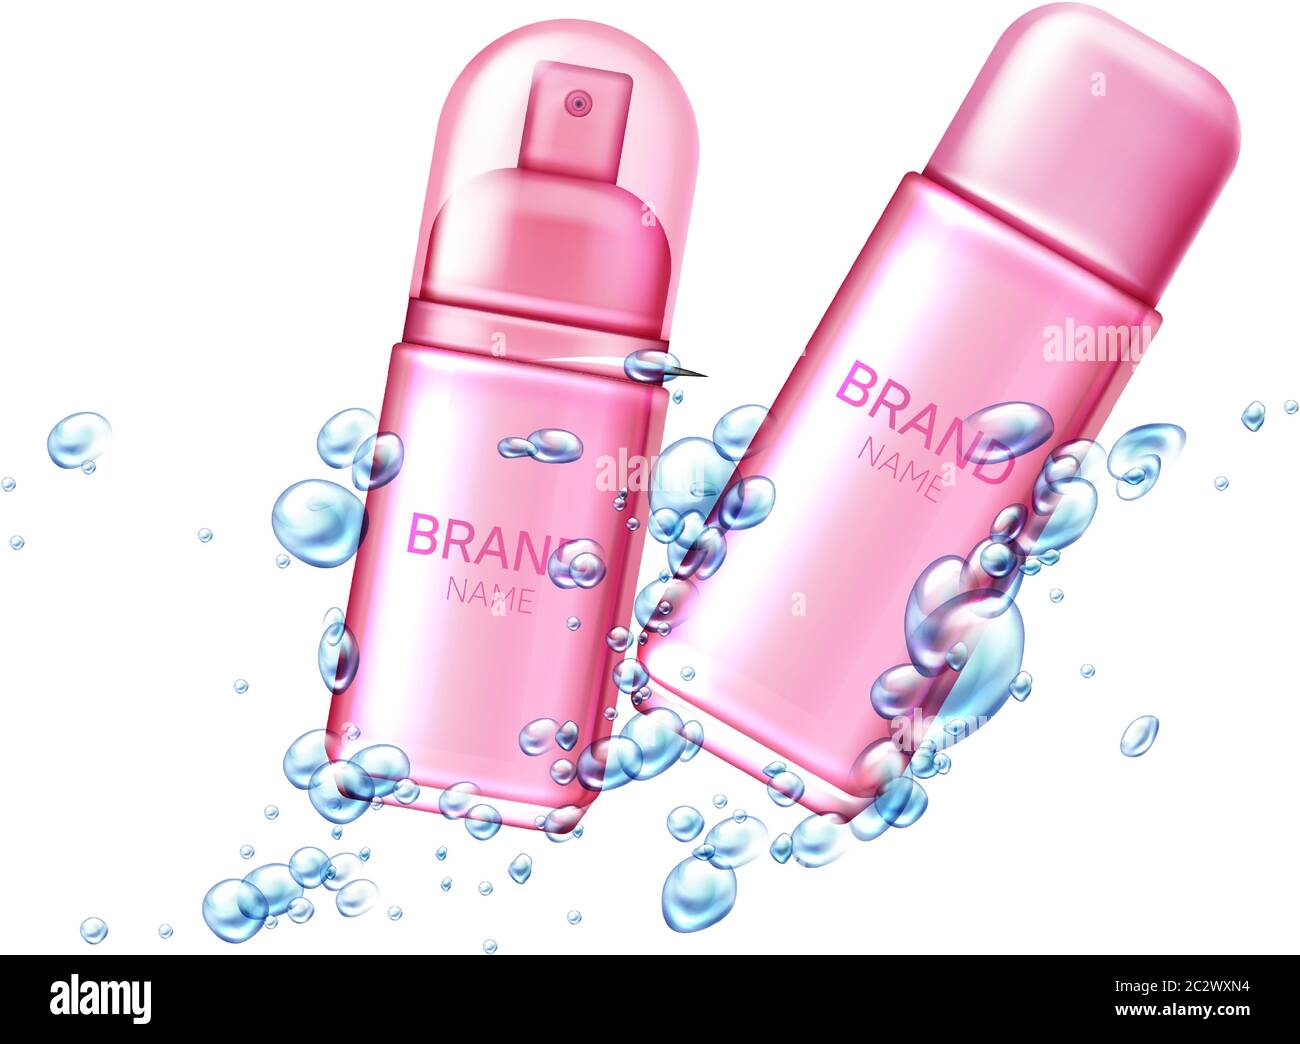 Deodorante spray in bomboletta aerosol di alluminio con bolle d'aria o gocce d'acqua vettore prodotto cosmetico realistico, antitraspirante in bottiglie di metallo rosa con p. Illustrazione Vettoriale